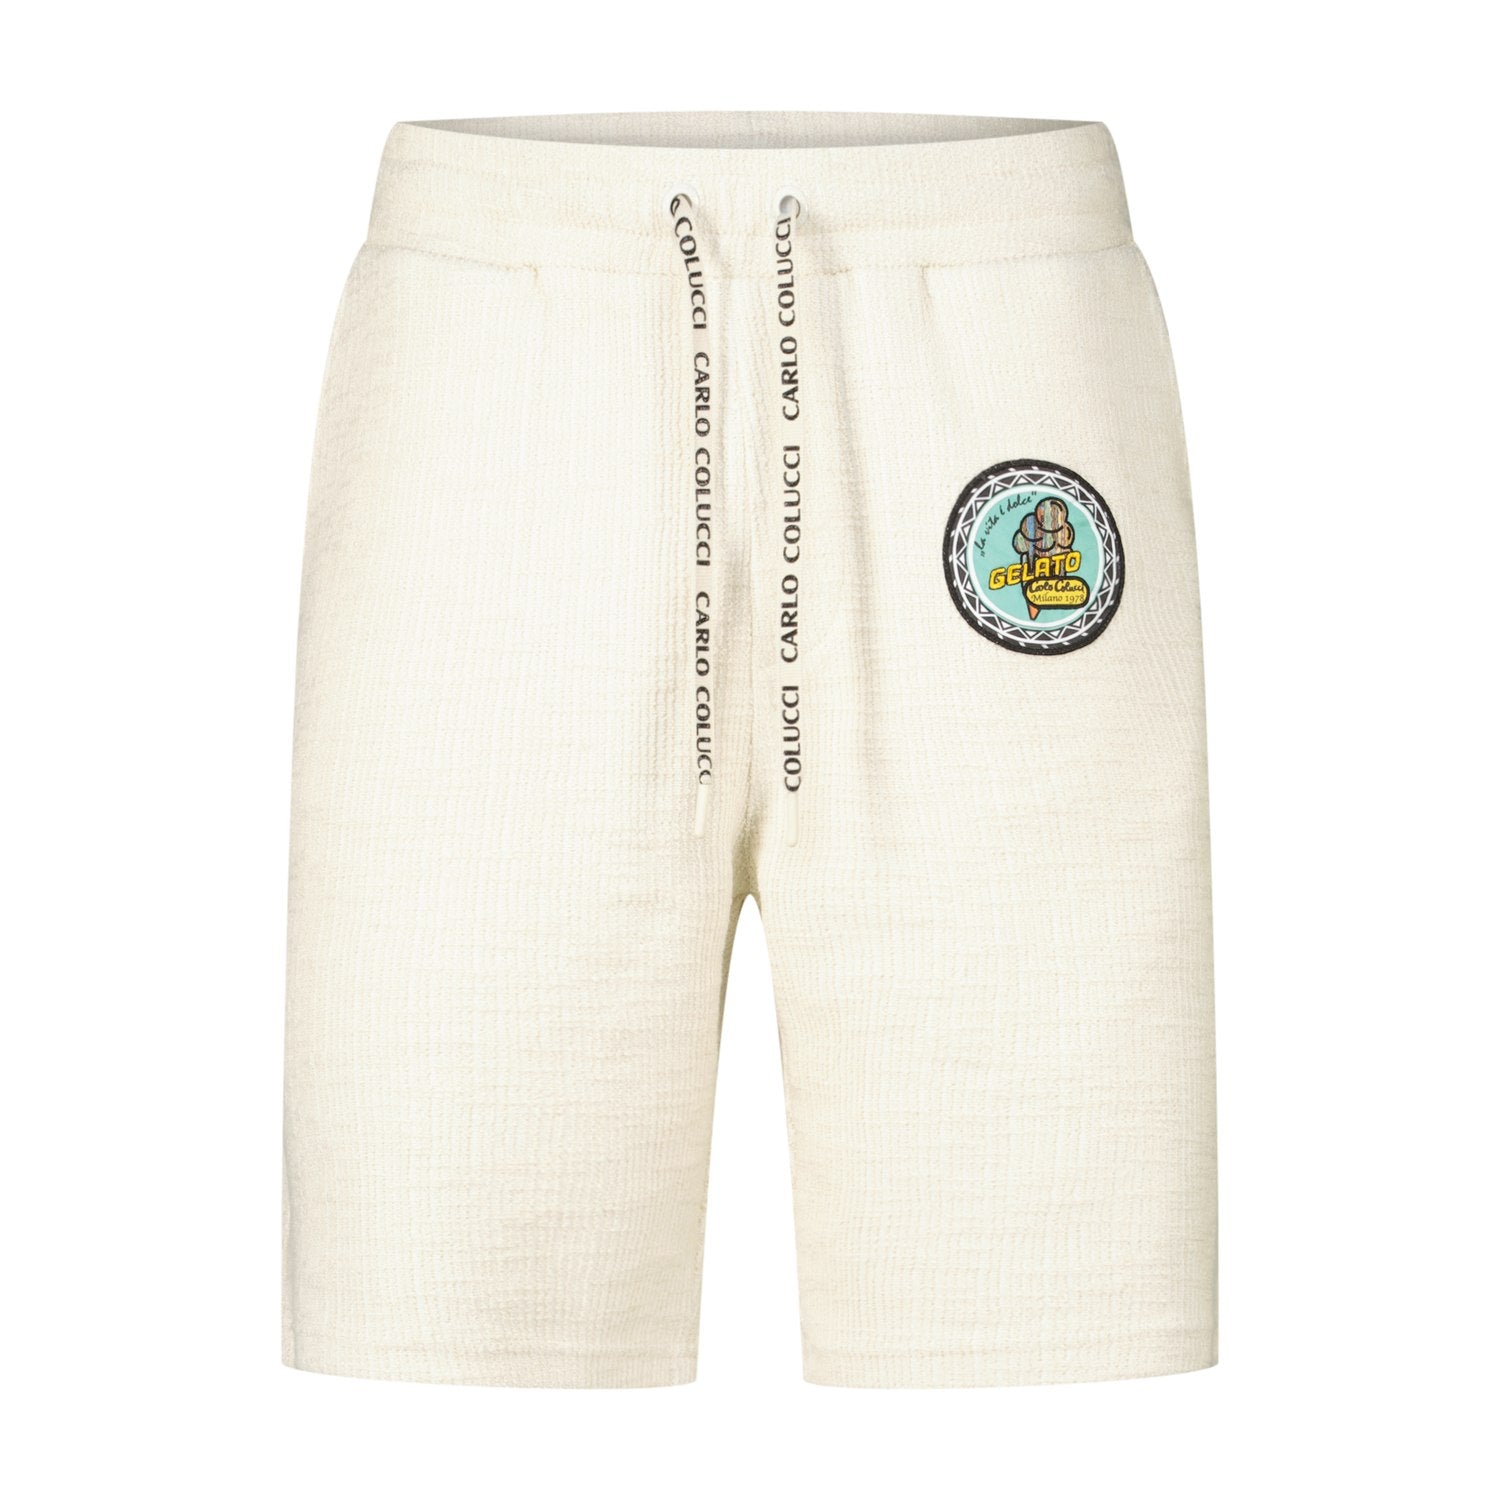 Bermuda-Shorts mit Struktur